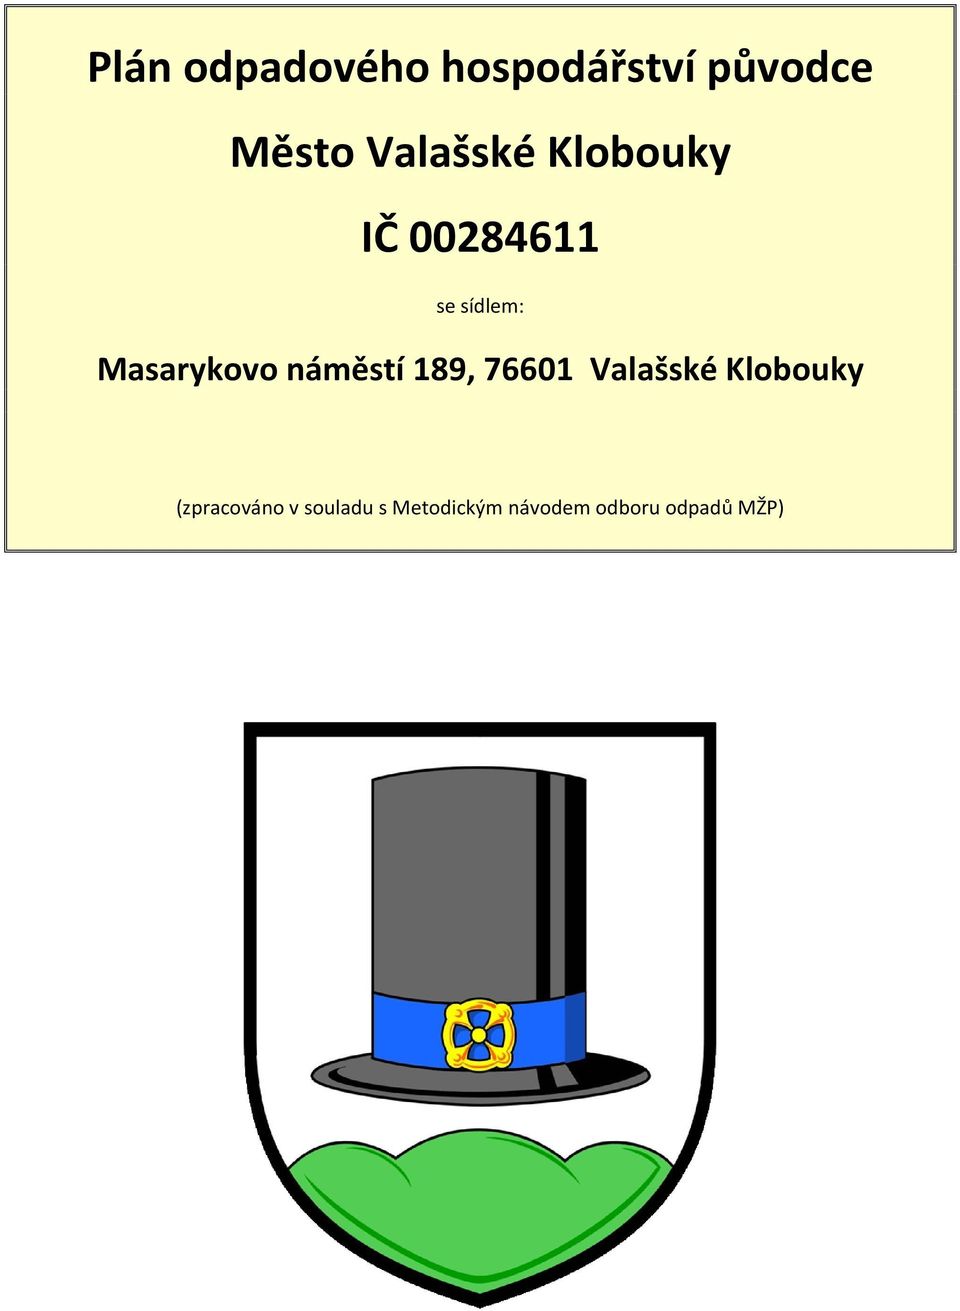 Masarykovo náměstí 89, 7660 Valašské Klobouky